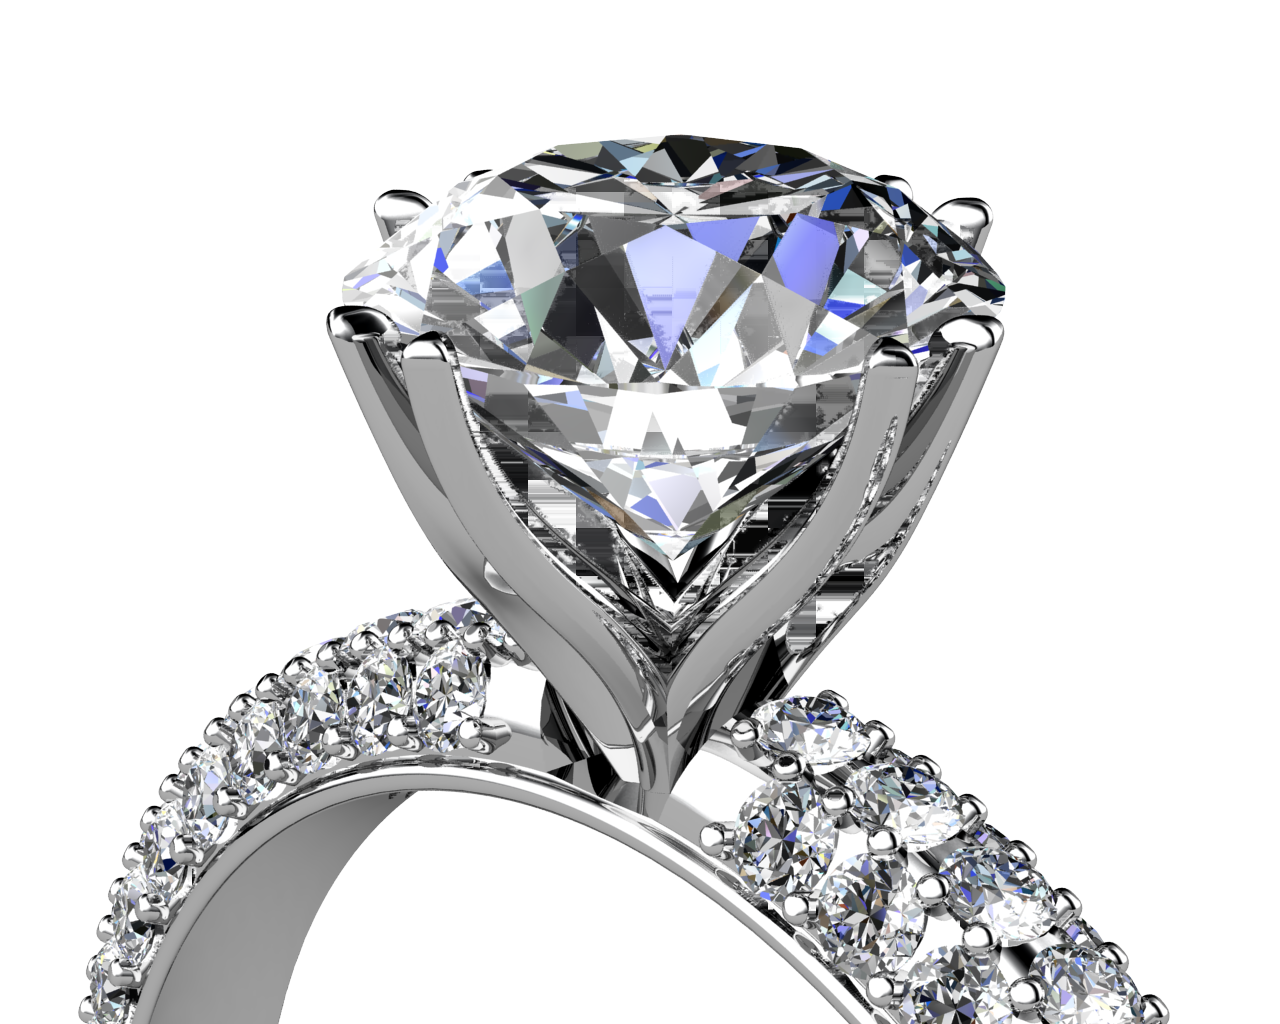 Камень Диамант Даймонд кольцо. Диамонд кольцо с бриллиантами. Даймонд джевелери. Золотые брильянтовые кольца Диамант. Украсить алмаз